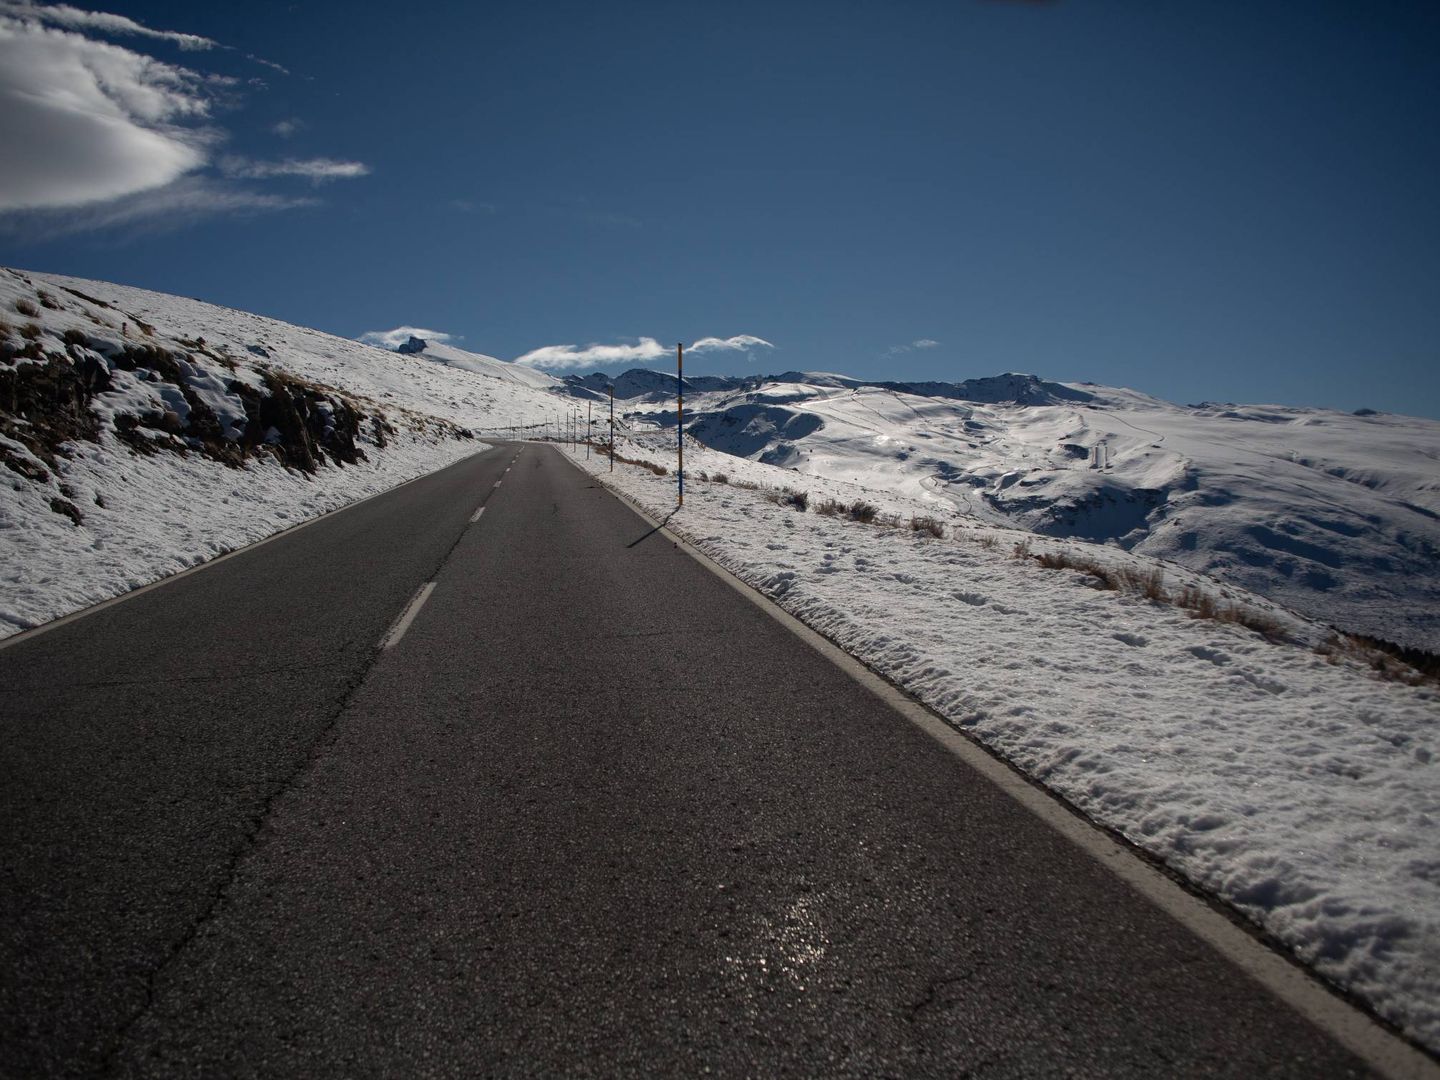 Carretera de Sierra Nevada sin tráfico por las restricciones del covid.